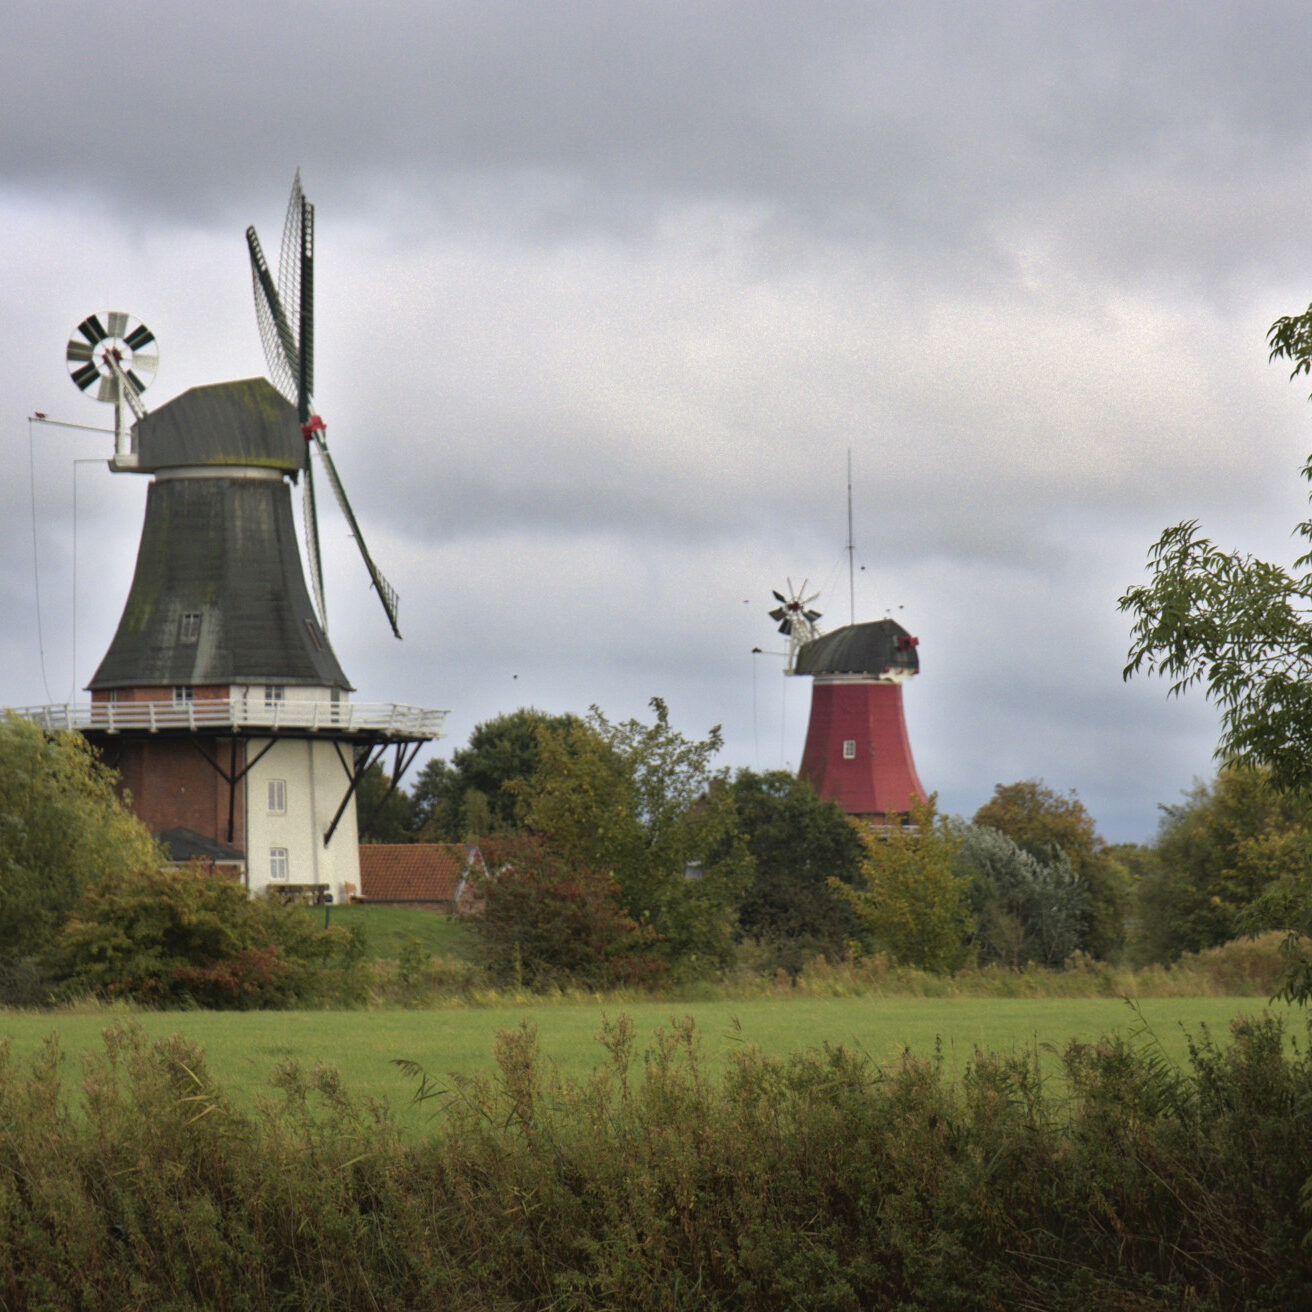 Windmühlen